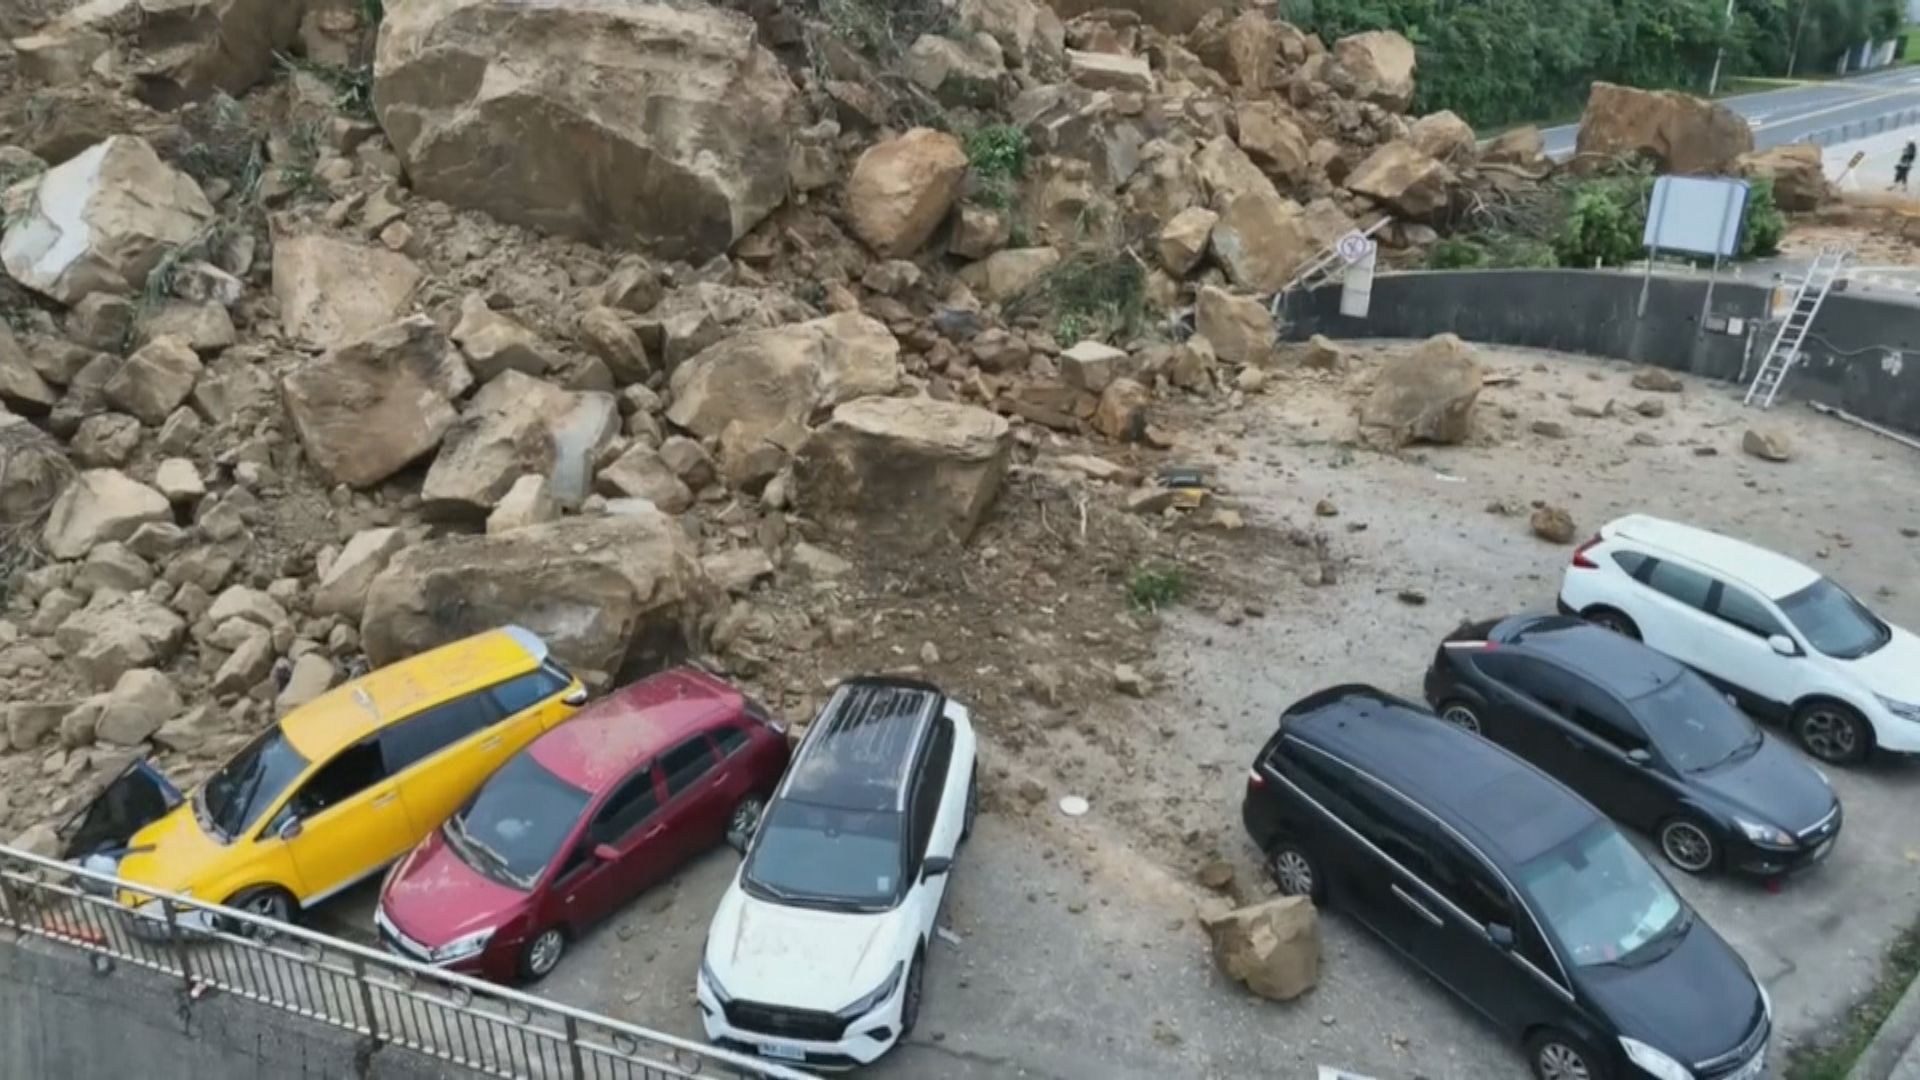 台灣基隆潮境公園路口山崩擊中多輛車 至少兩傷